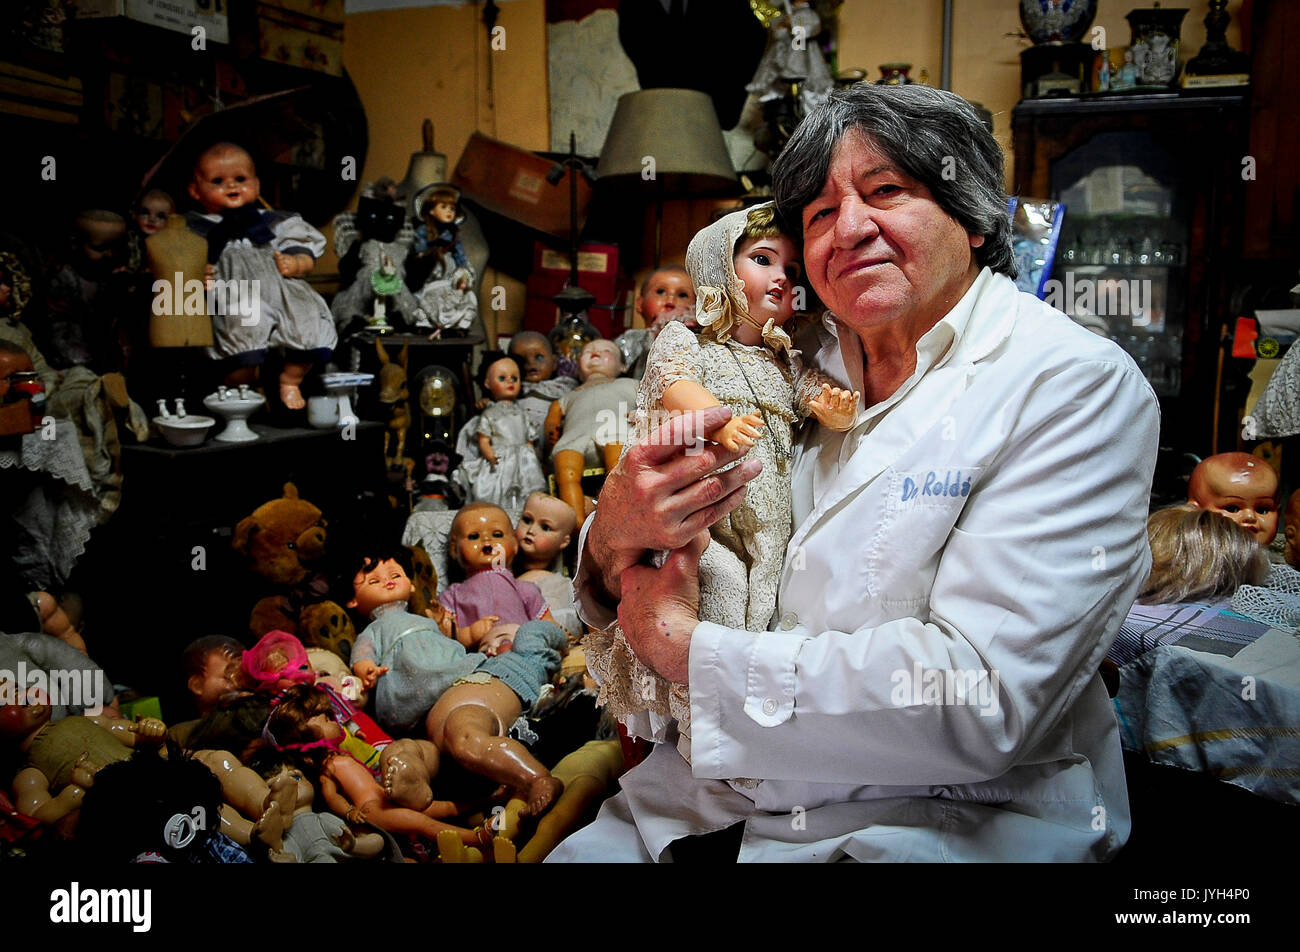 Buenos Aires. 16 Ago, 2017. Immagine presa sul mese di agosto 16, 2017, mostra Julio Roldan, che definisce se stesso come un 'doll medico', mantenendo una bambola al suo prodotto "bambole" clinica nel quartiere di Balvanera a Buenos Aires, Argentina. In età di tutto monouso, Argentina del 'doll medico' dà giocattoli rotti una seconda possibilità di vita. Credito: Ignacio Corbalan/TELAM/Xinhua/Alamy Live News Foto Stock